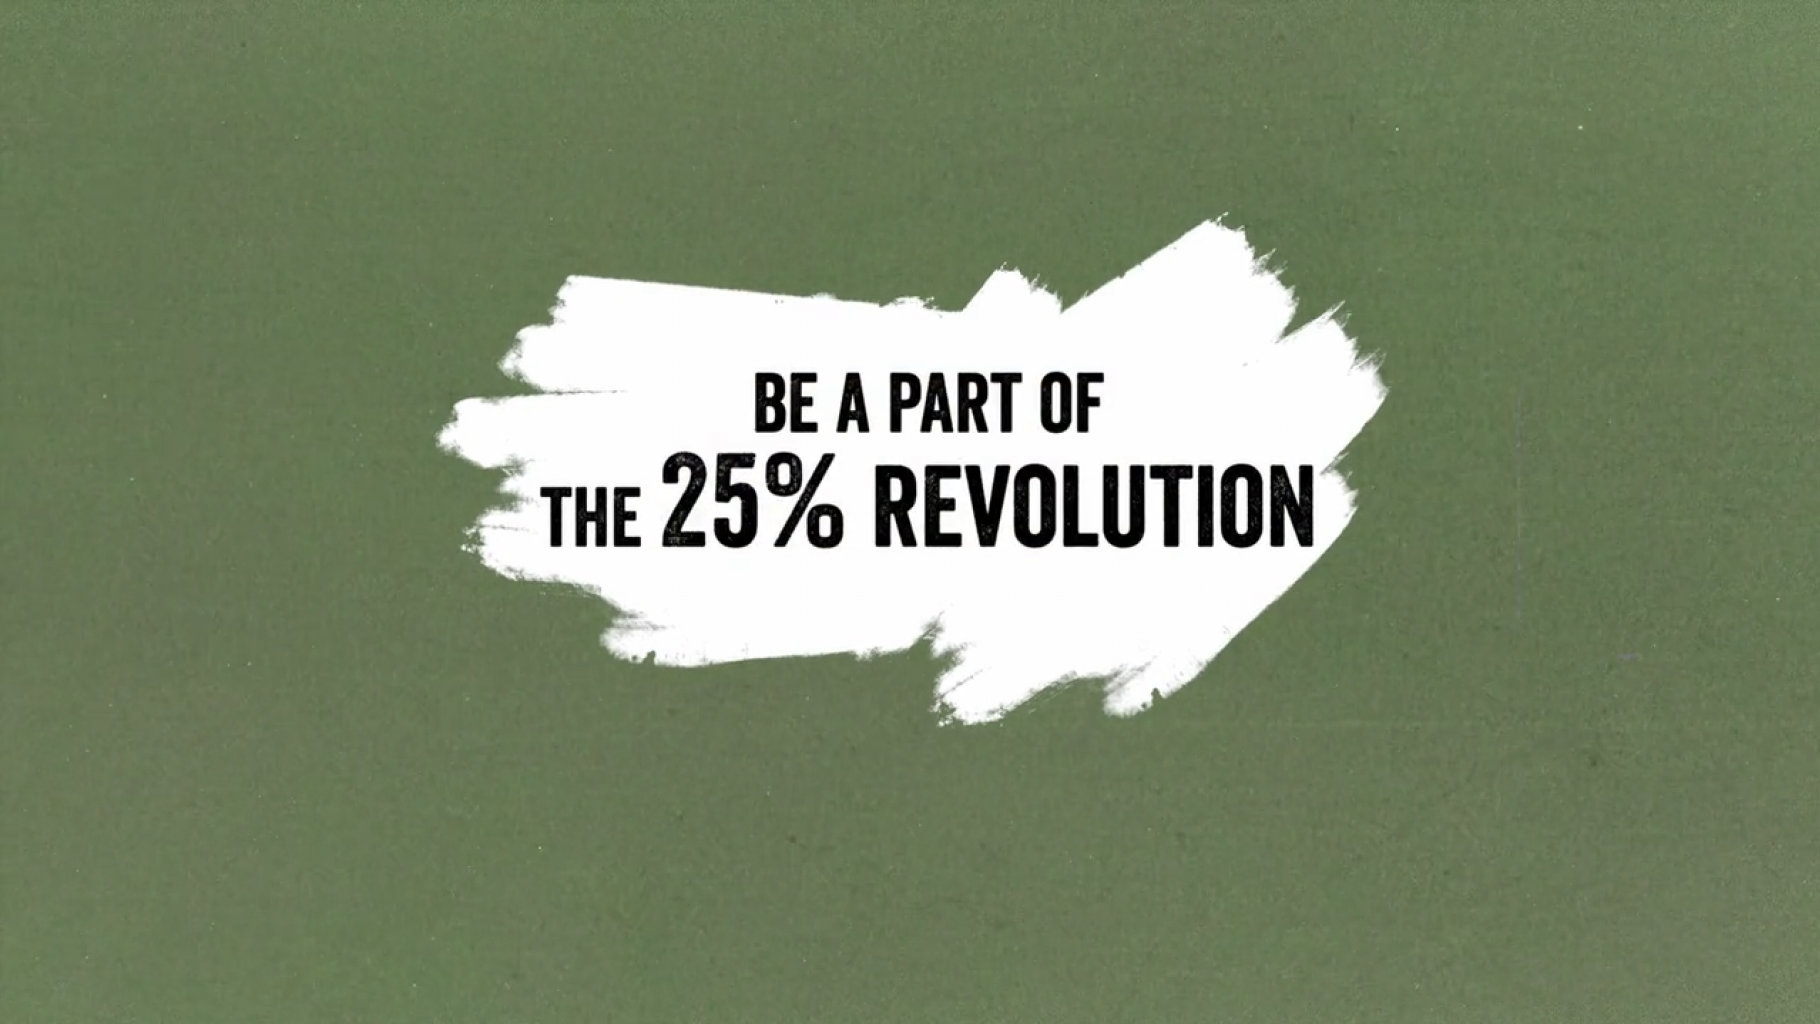 Das Bild zeigt die Aufschrift "Be part of the 25-Percent-Revolution", zu deuscth: Werde ein Teil der 25-Prozent-Revolution!